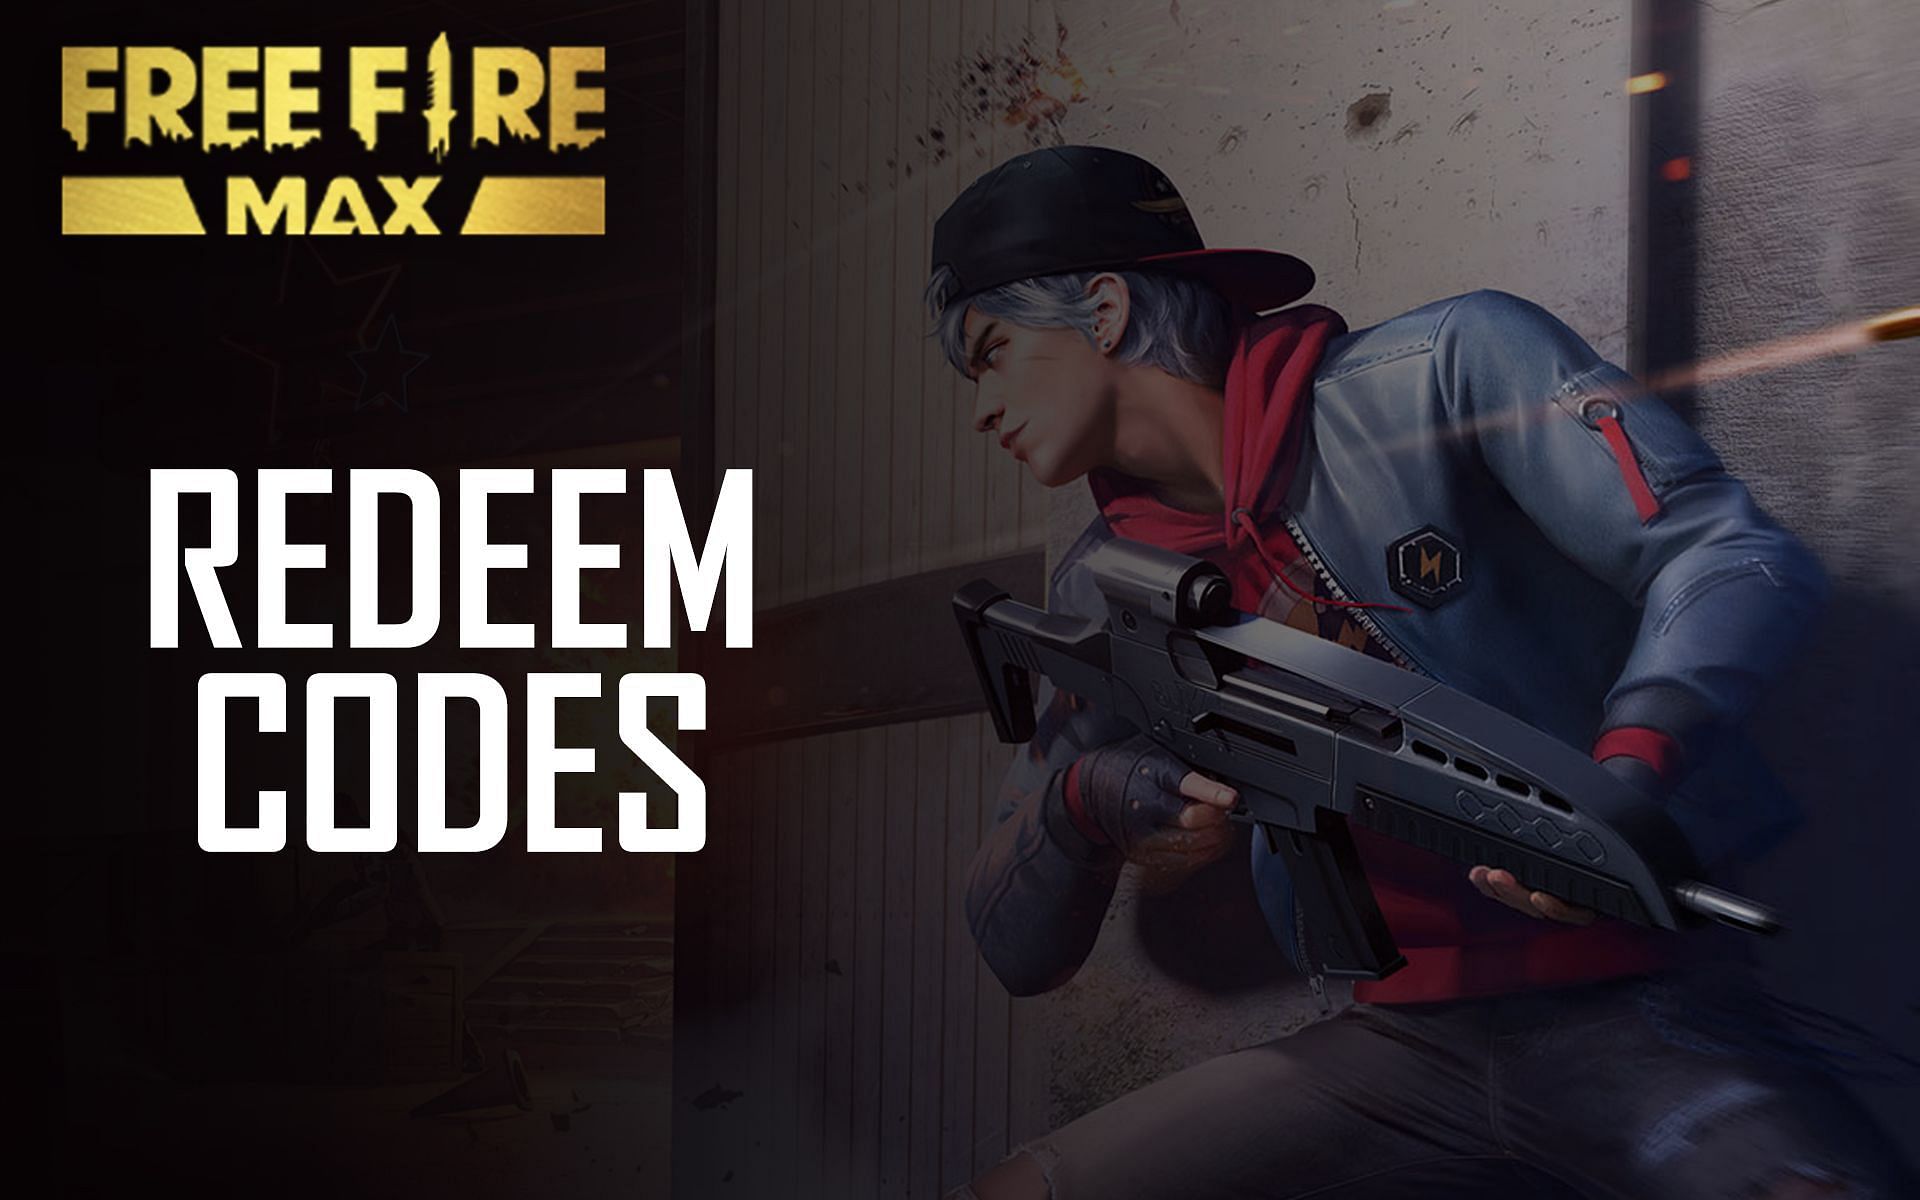 Lista de códigos de canje de Free Fire MAX con recompensas legendarias hasta el momento (junio de 2022)